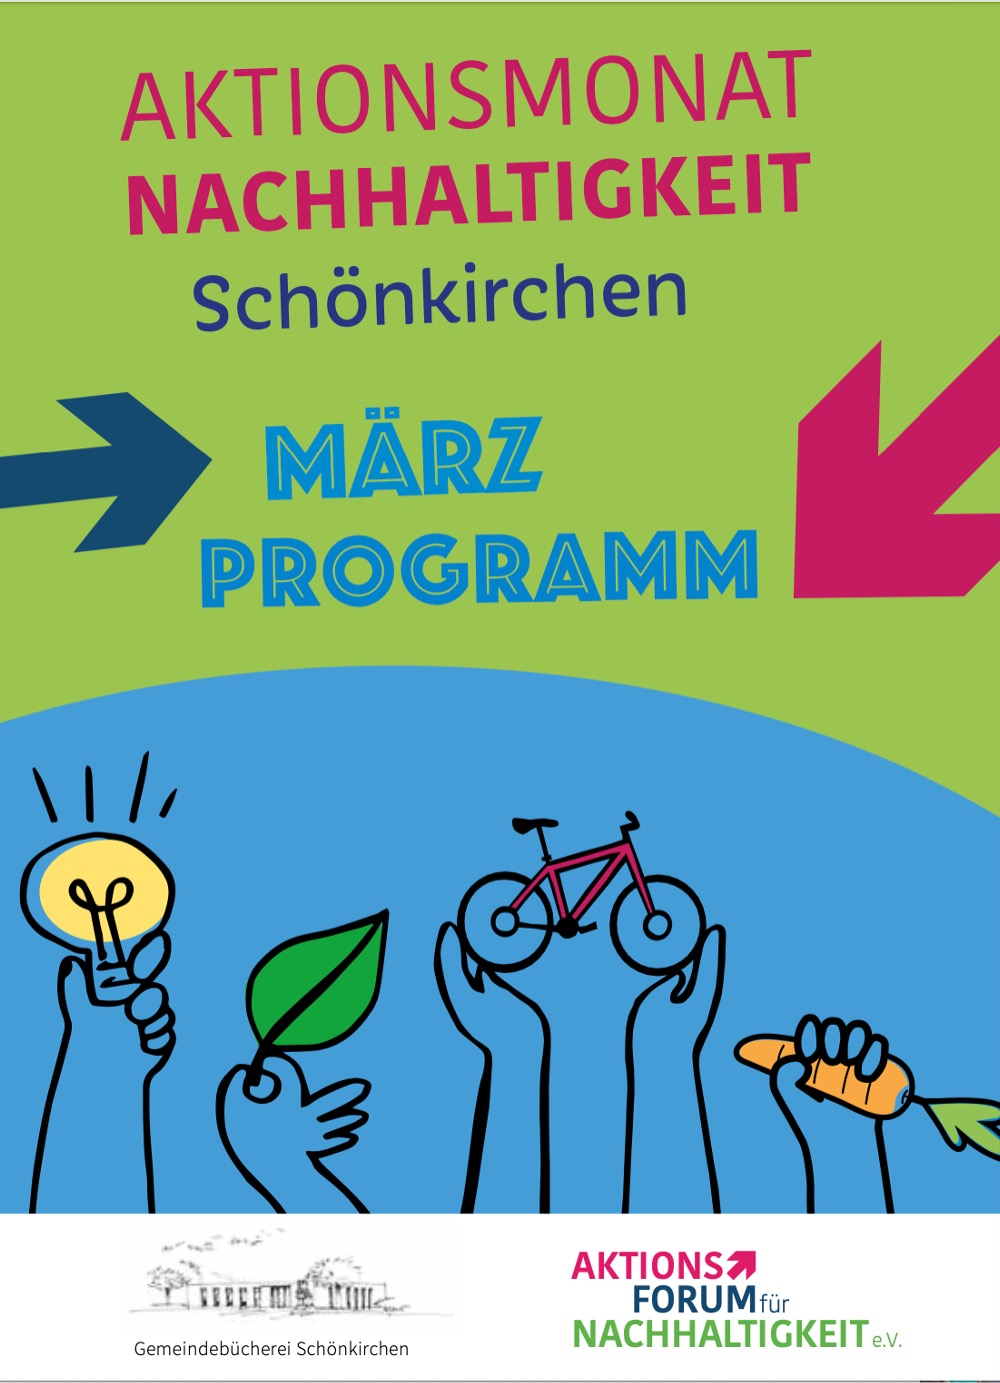 Aktionsmonat Nachhaltigkeit  in Schönkirchen